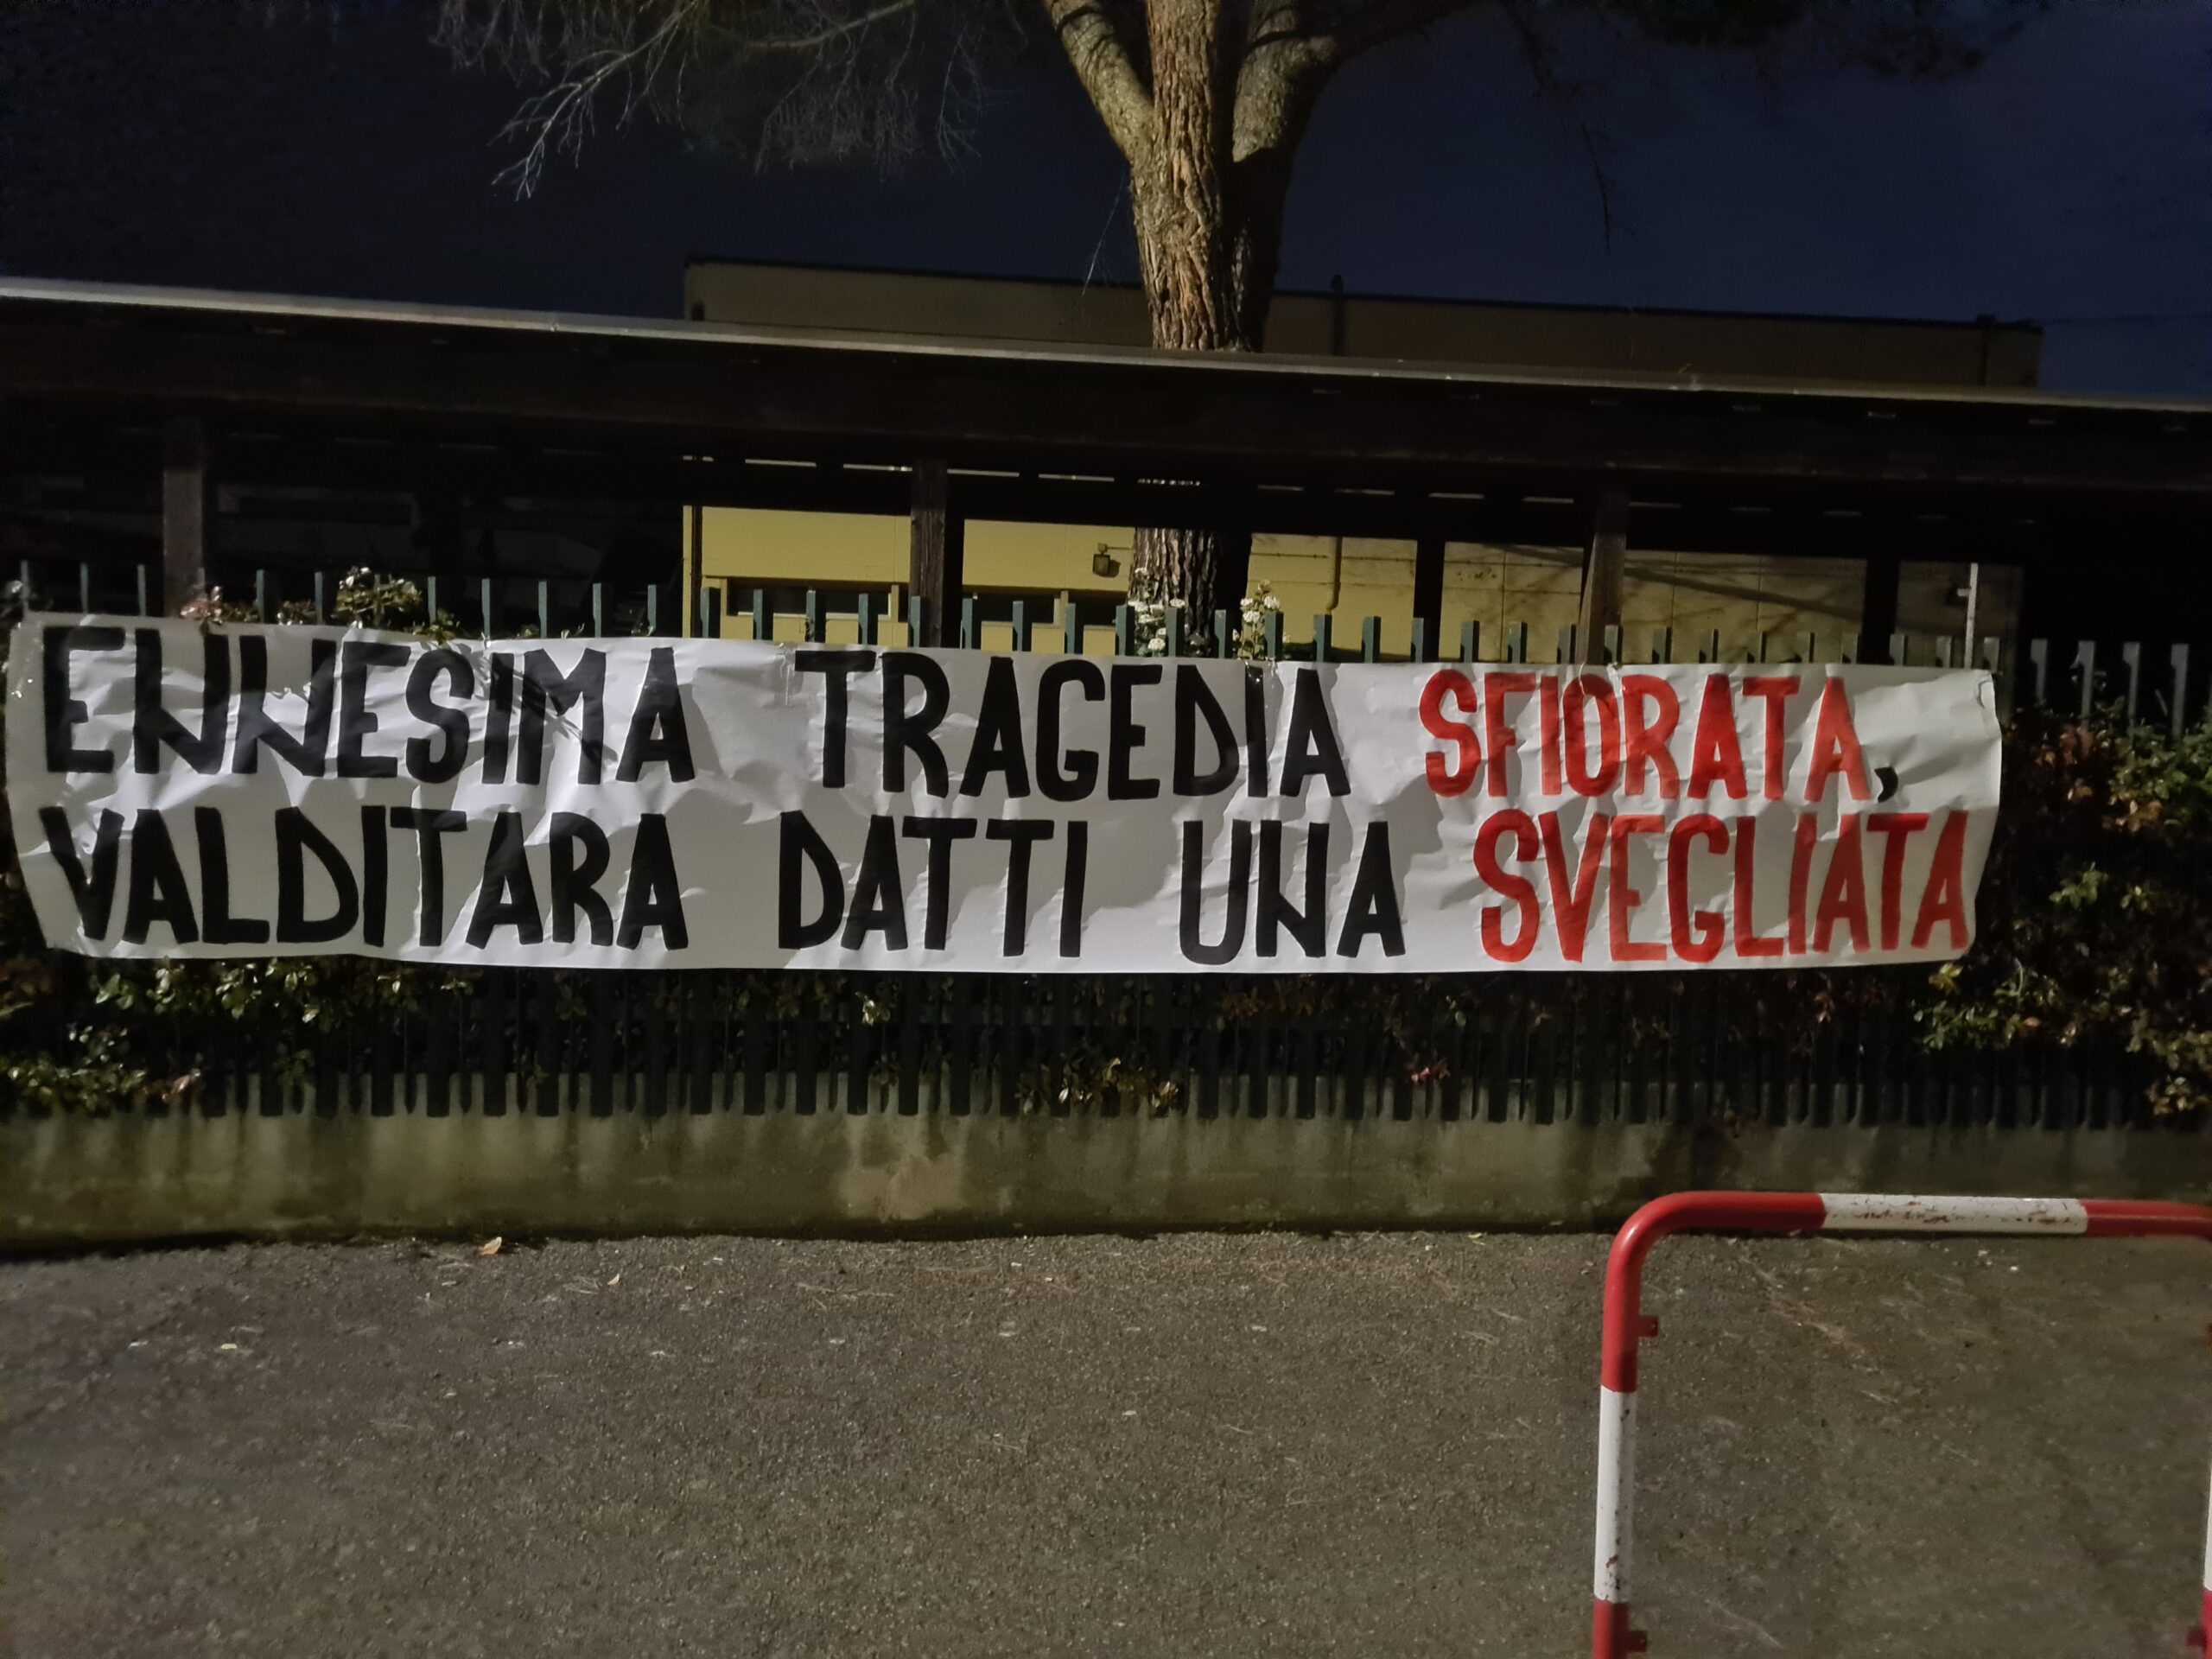 Controsoffitto crolla in testa agli studenti, la denuncia di Blocco Studentesco Arezzo